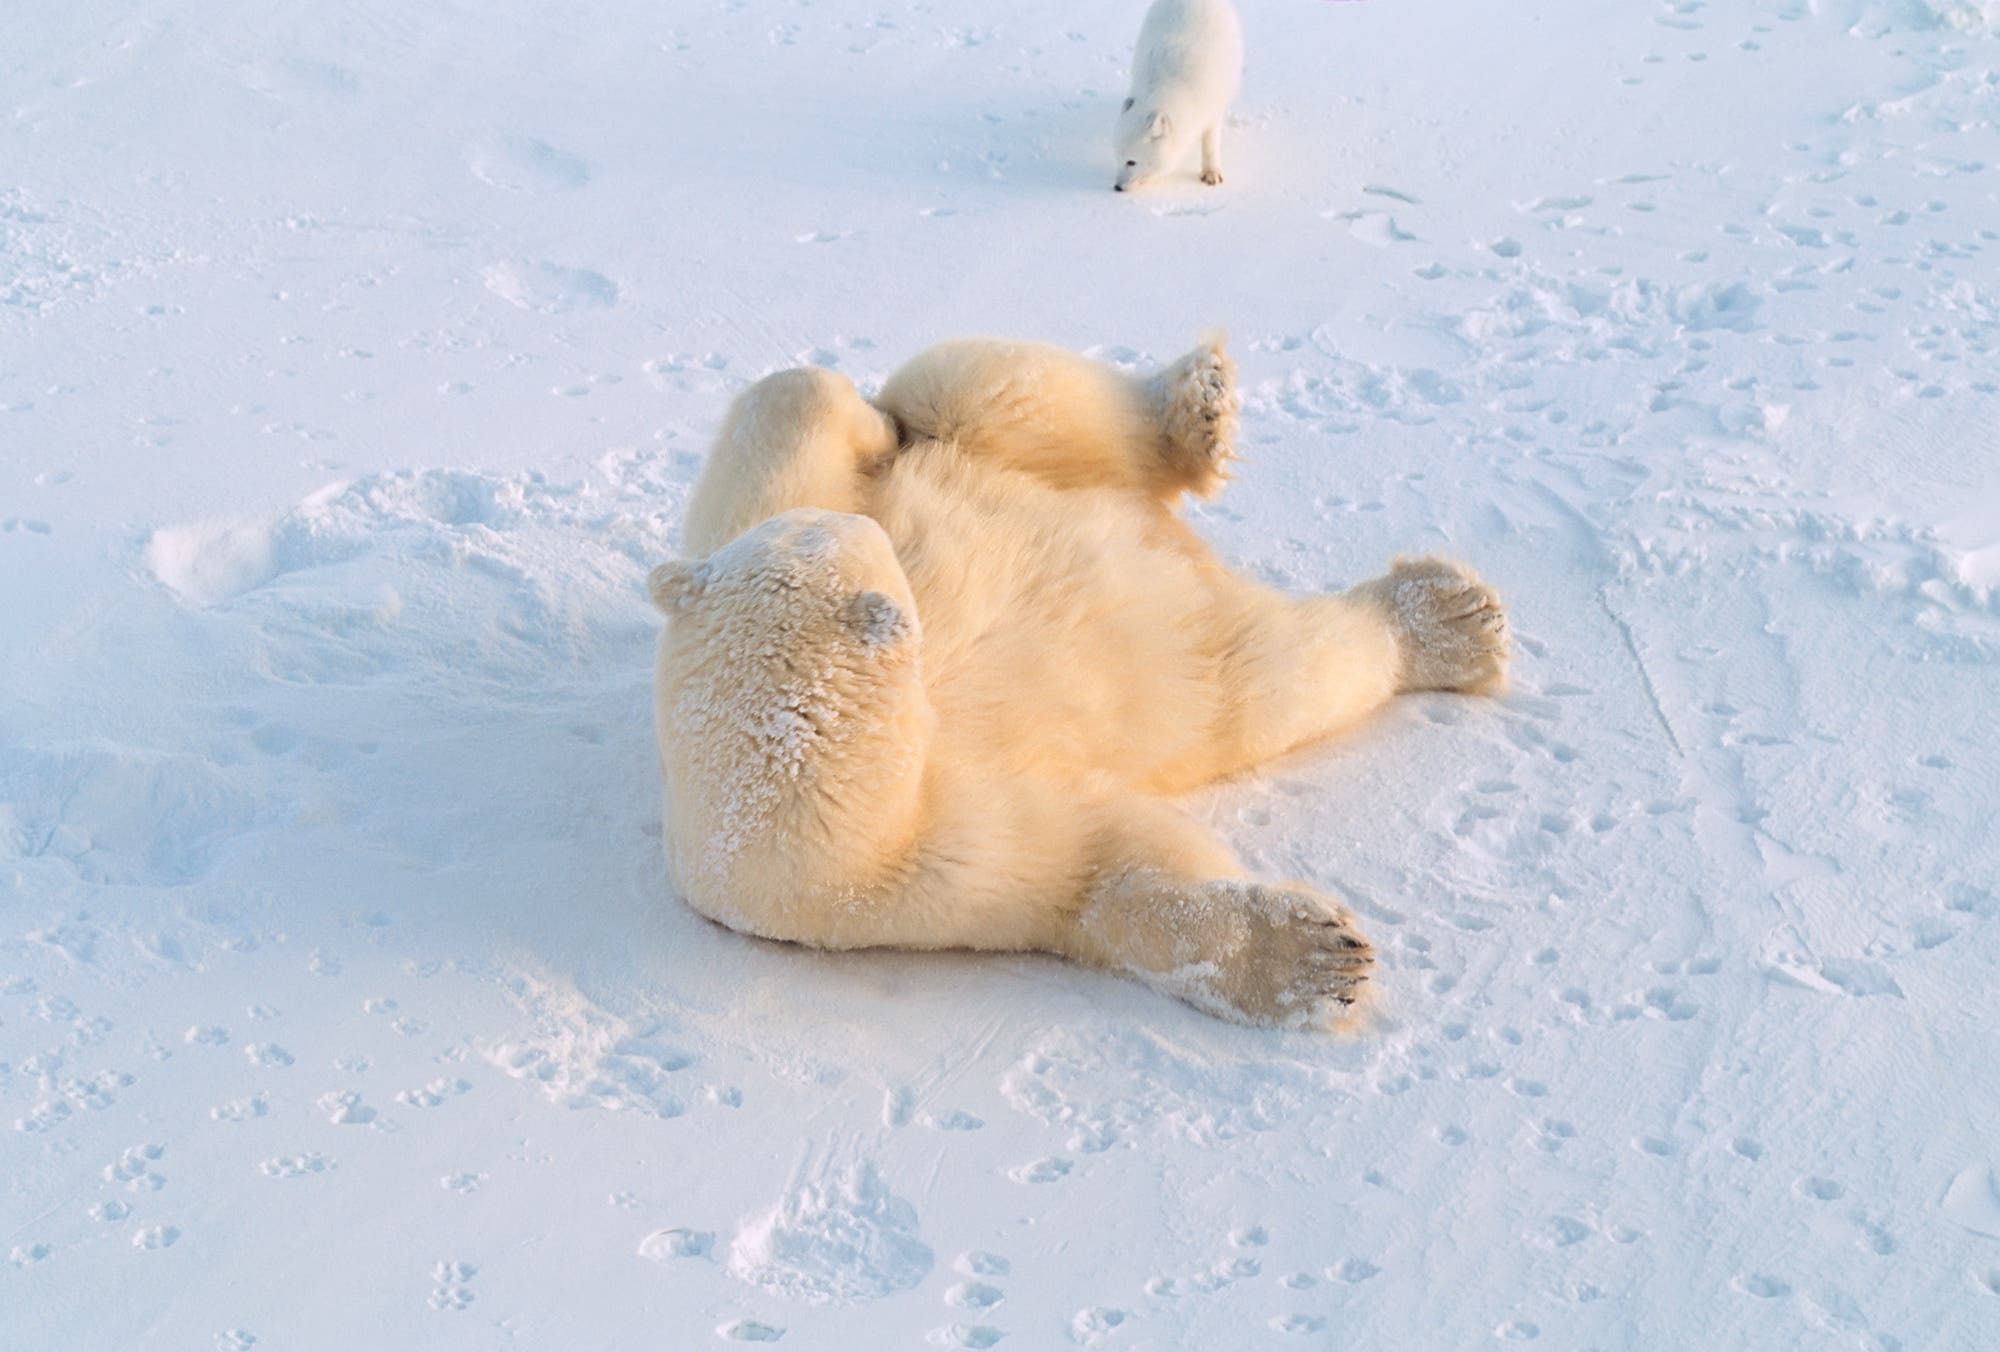 Polarfüchse und Eisbären bilden ein ungewöhnliches Tandem